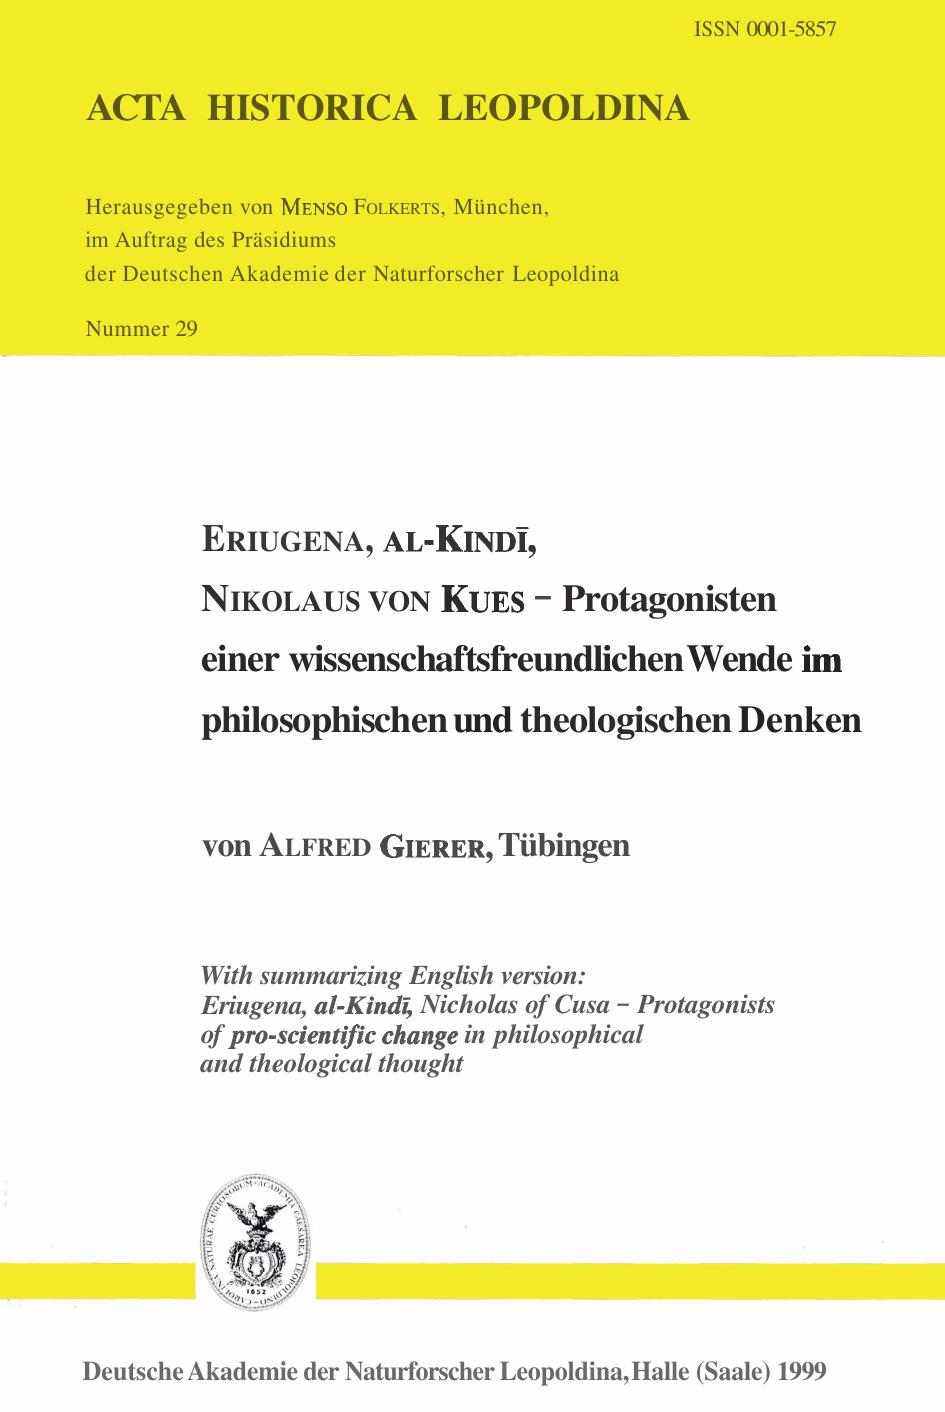 Eriugena, al-Kindī, Nikolaus von Kues: Protagonisten einer wissenschaftsfreundlichen Wende im philosophischen und theologischen Denken